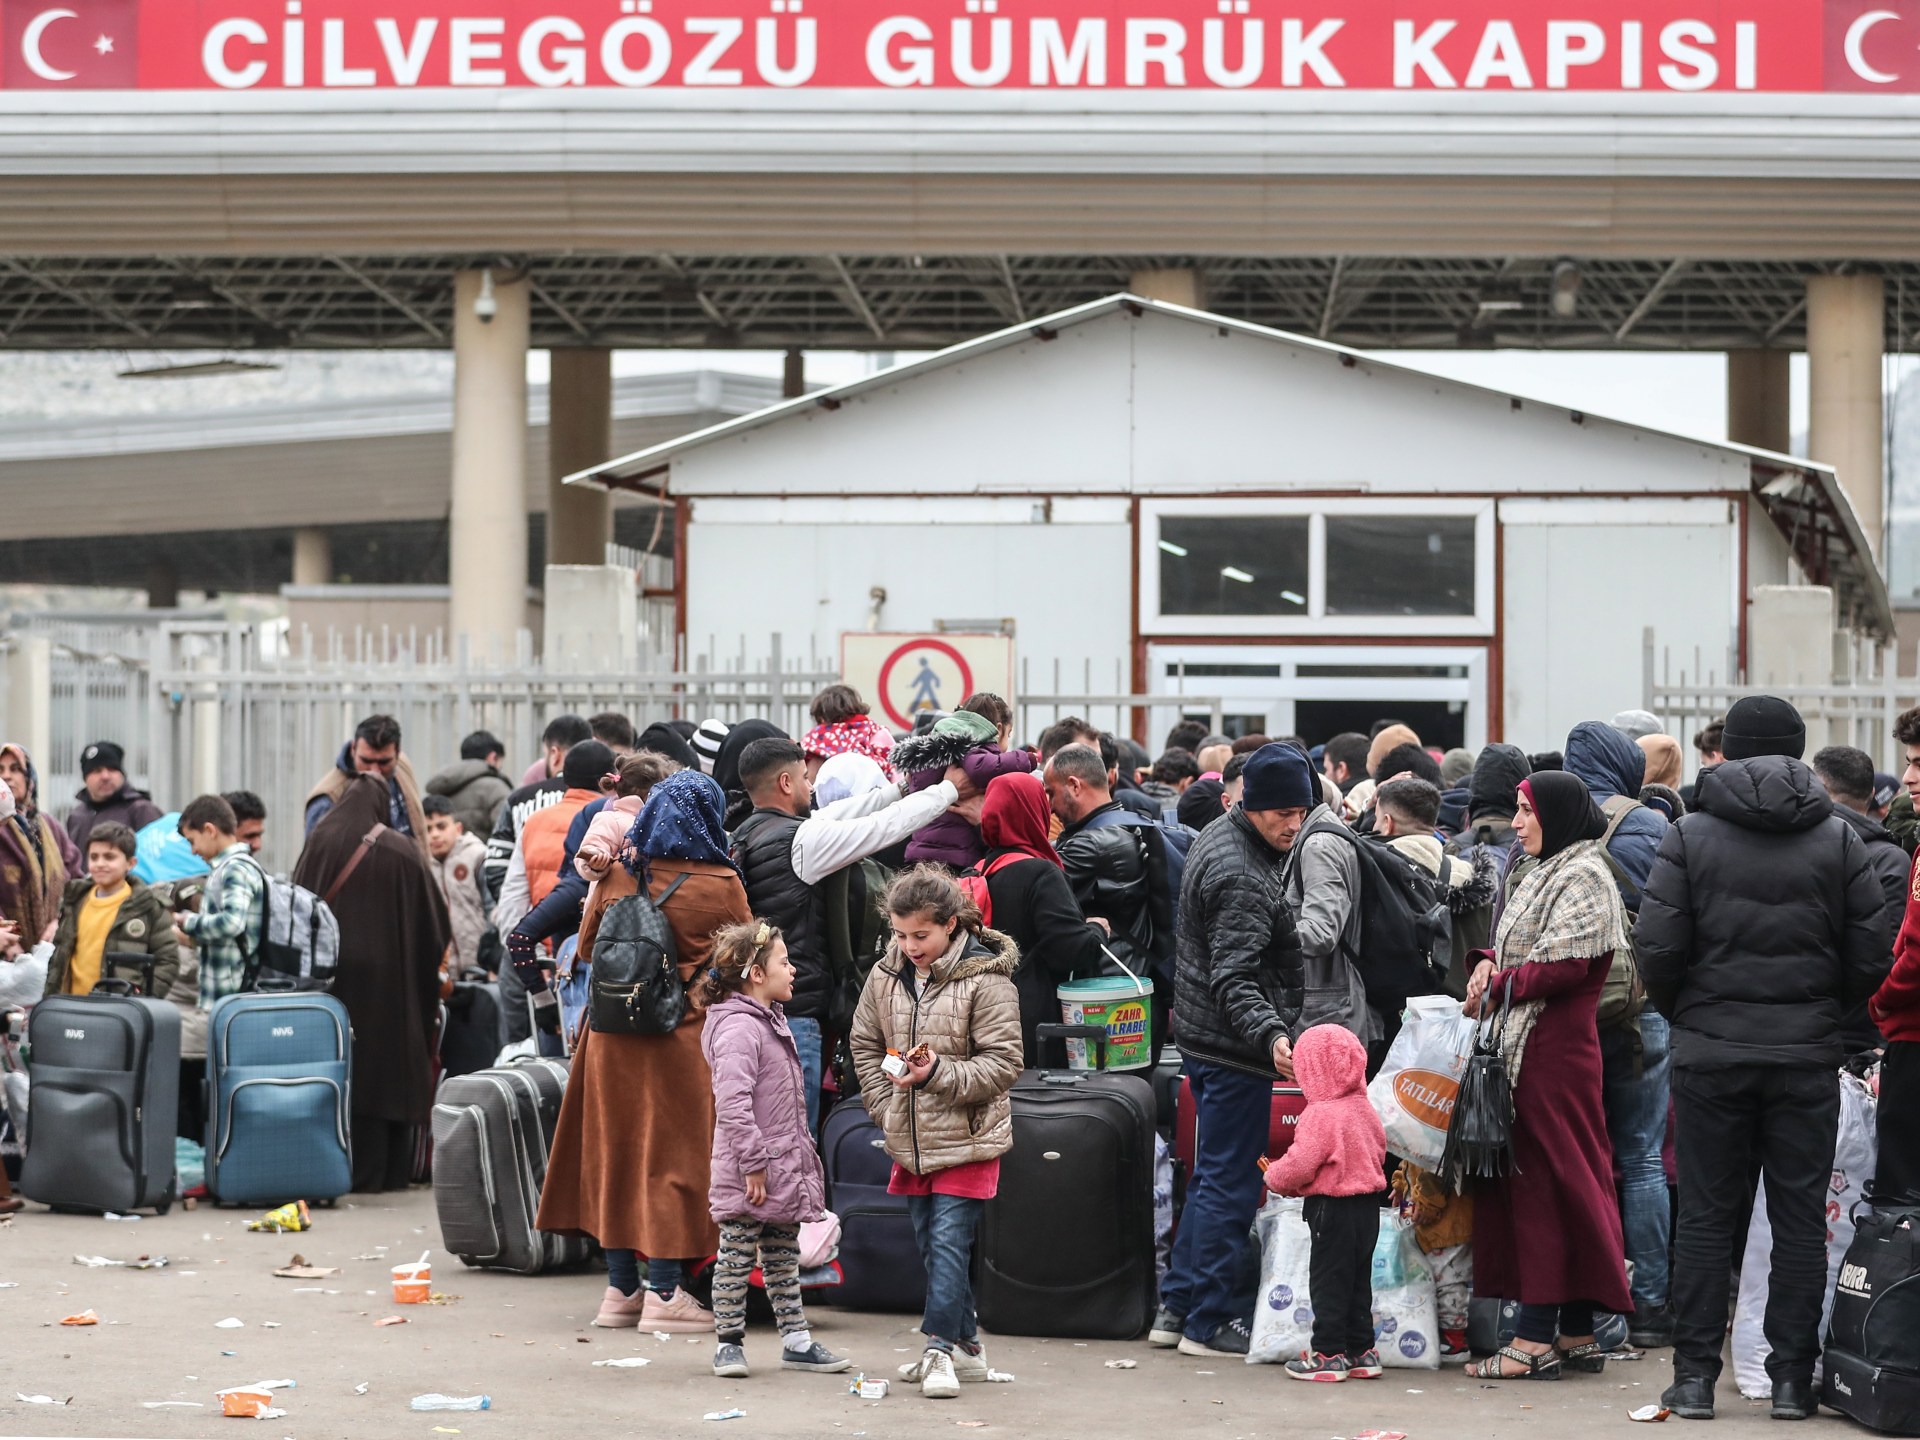 انتخابات تركيا المحلية.. هل يُستعمل اللاجئون كورقة دعائية؟ | سياسة – البوكس نيوز